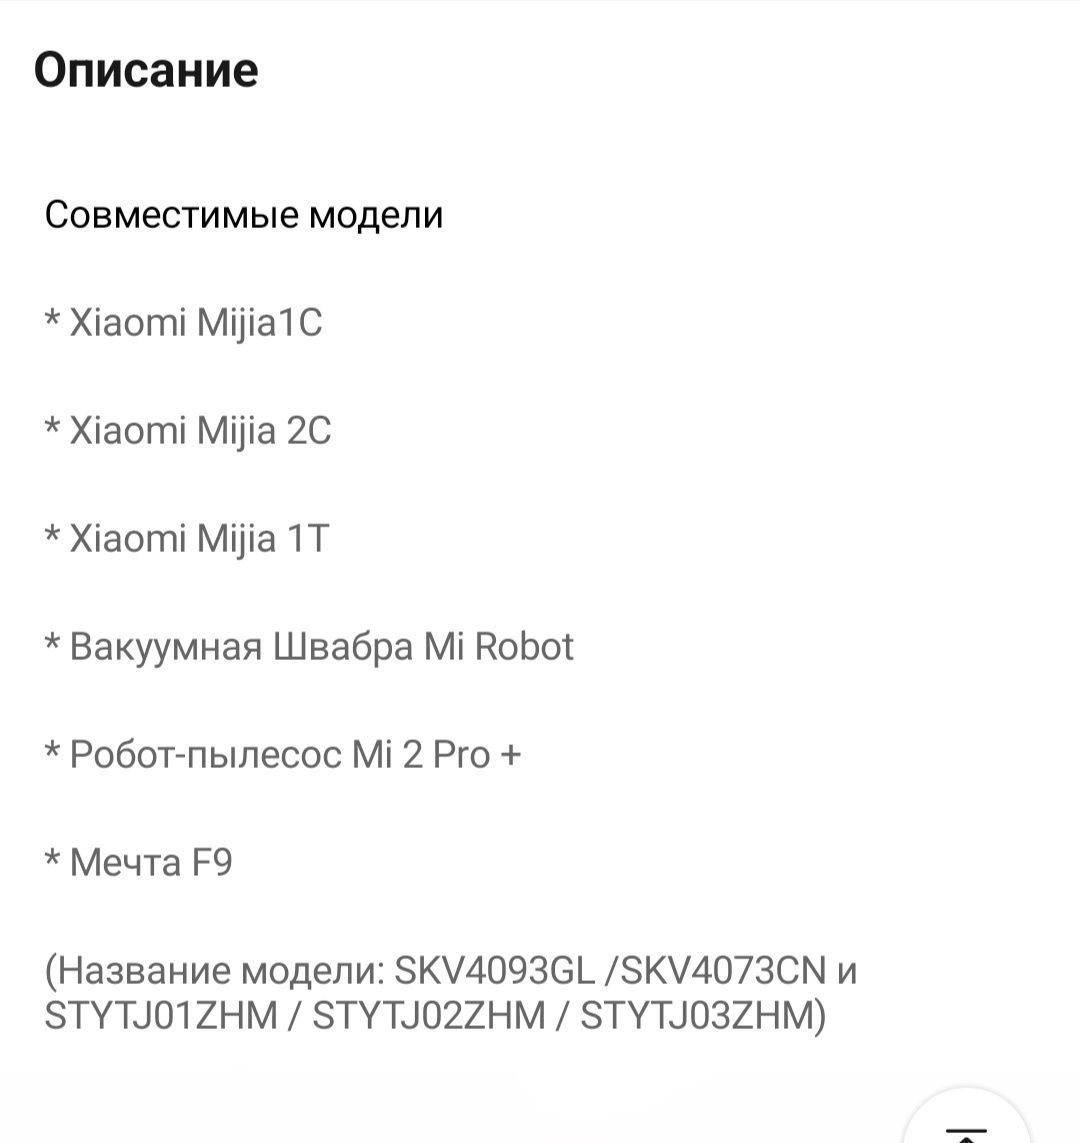 Щётка для пылесоса Xiaomi Mijia 1C, 1T, 2C,Mi 2Pro+